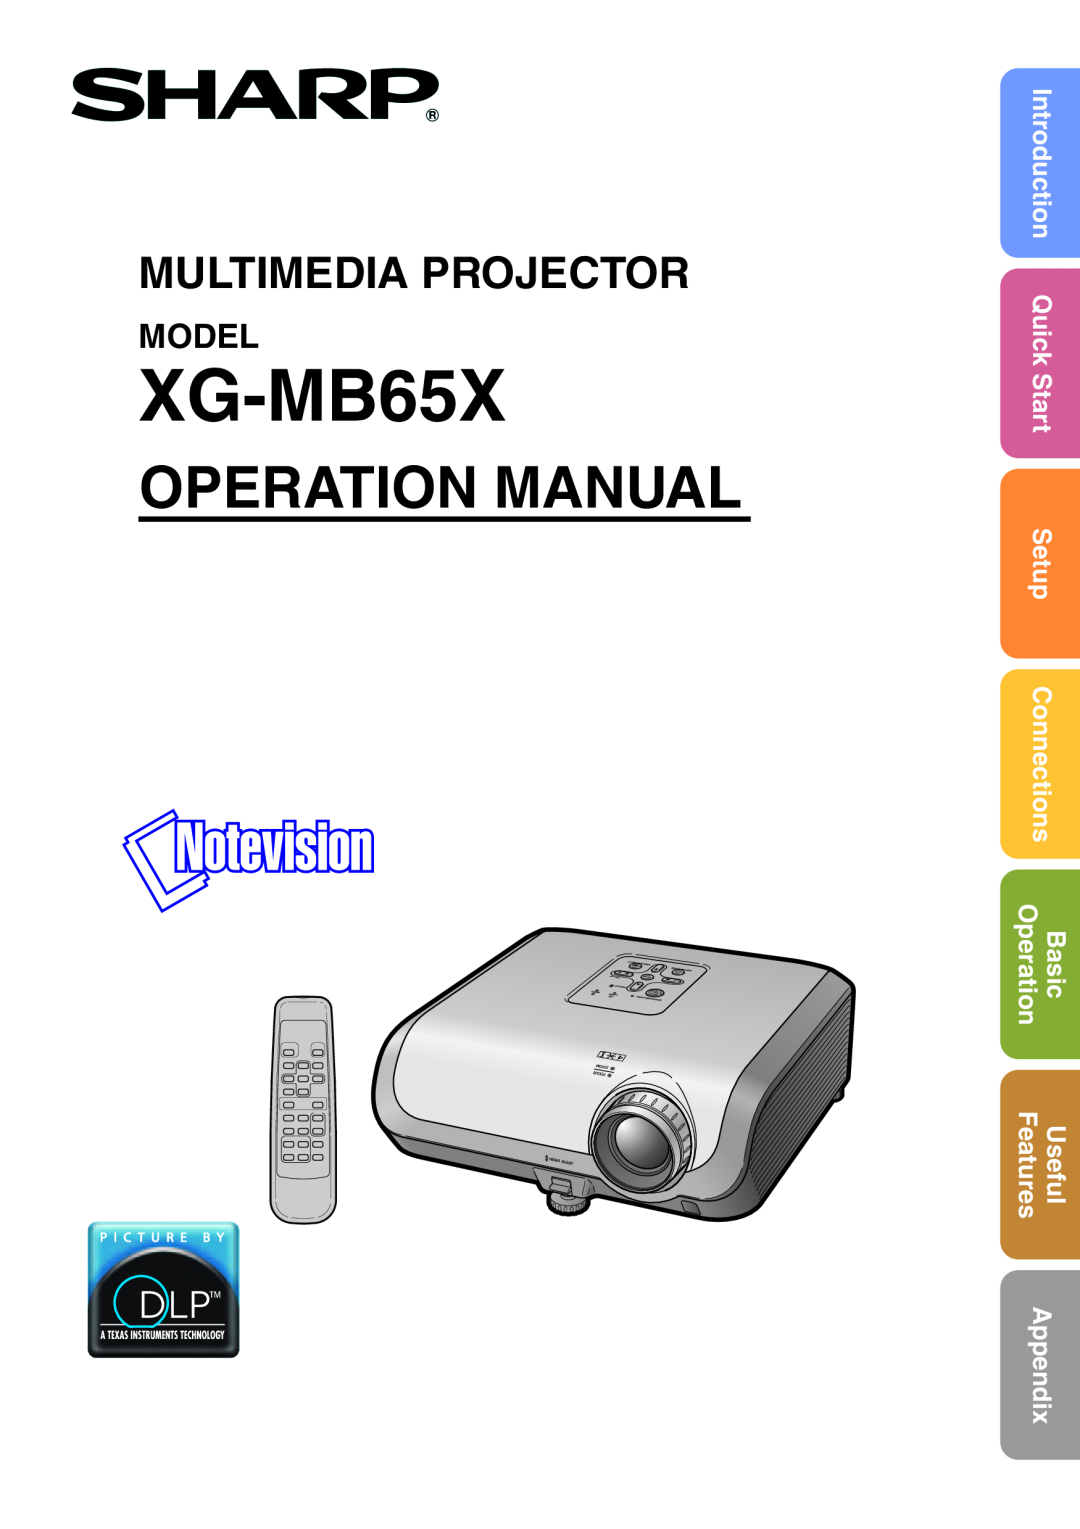 Sharp XG-MB65X operation manual Model, Operation Manual, Multimedia Projector, Setup, Features, Appendix, QuickStart 